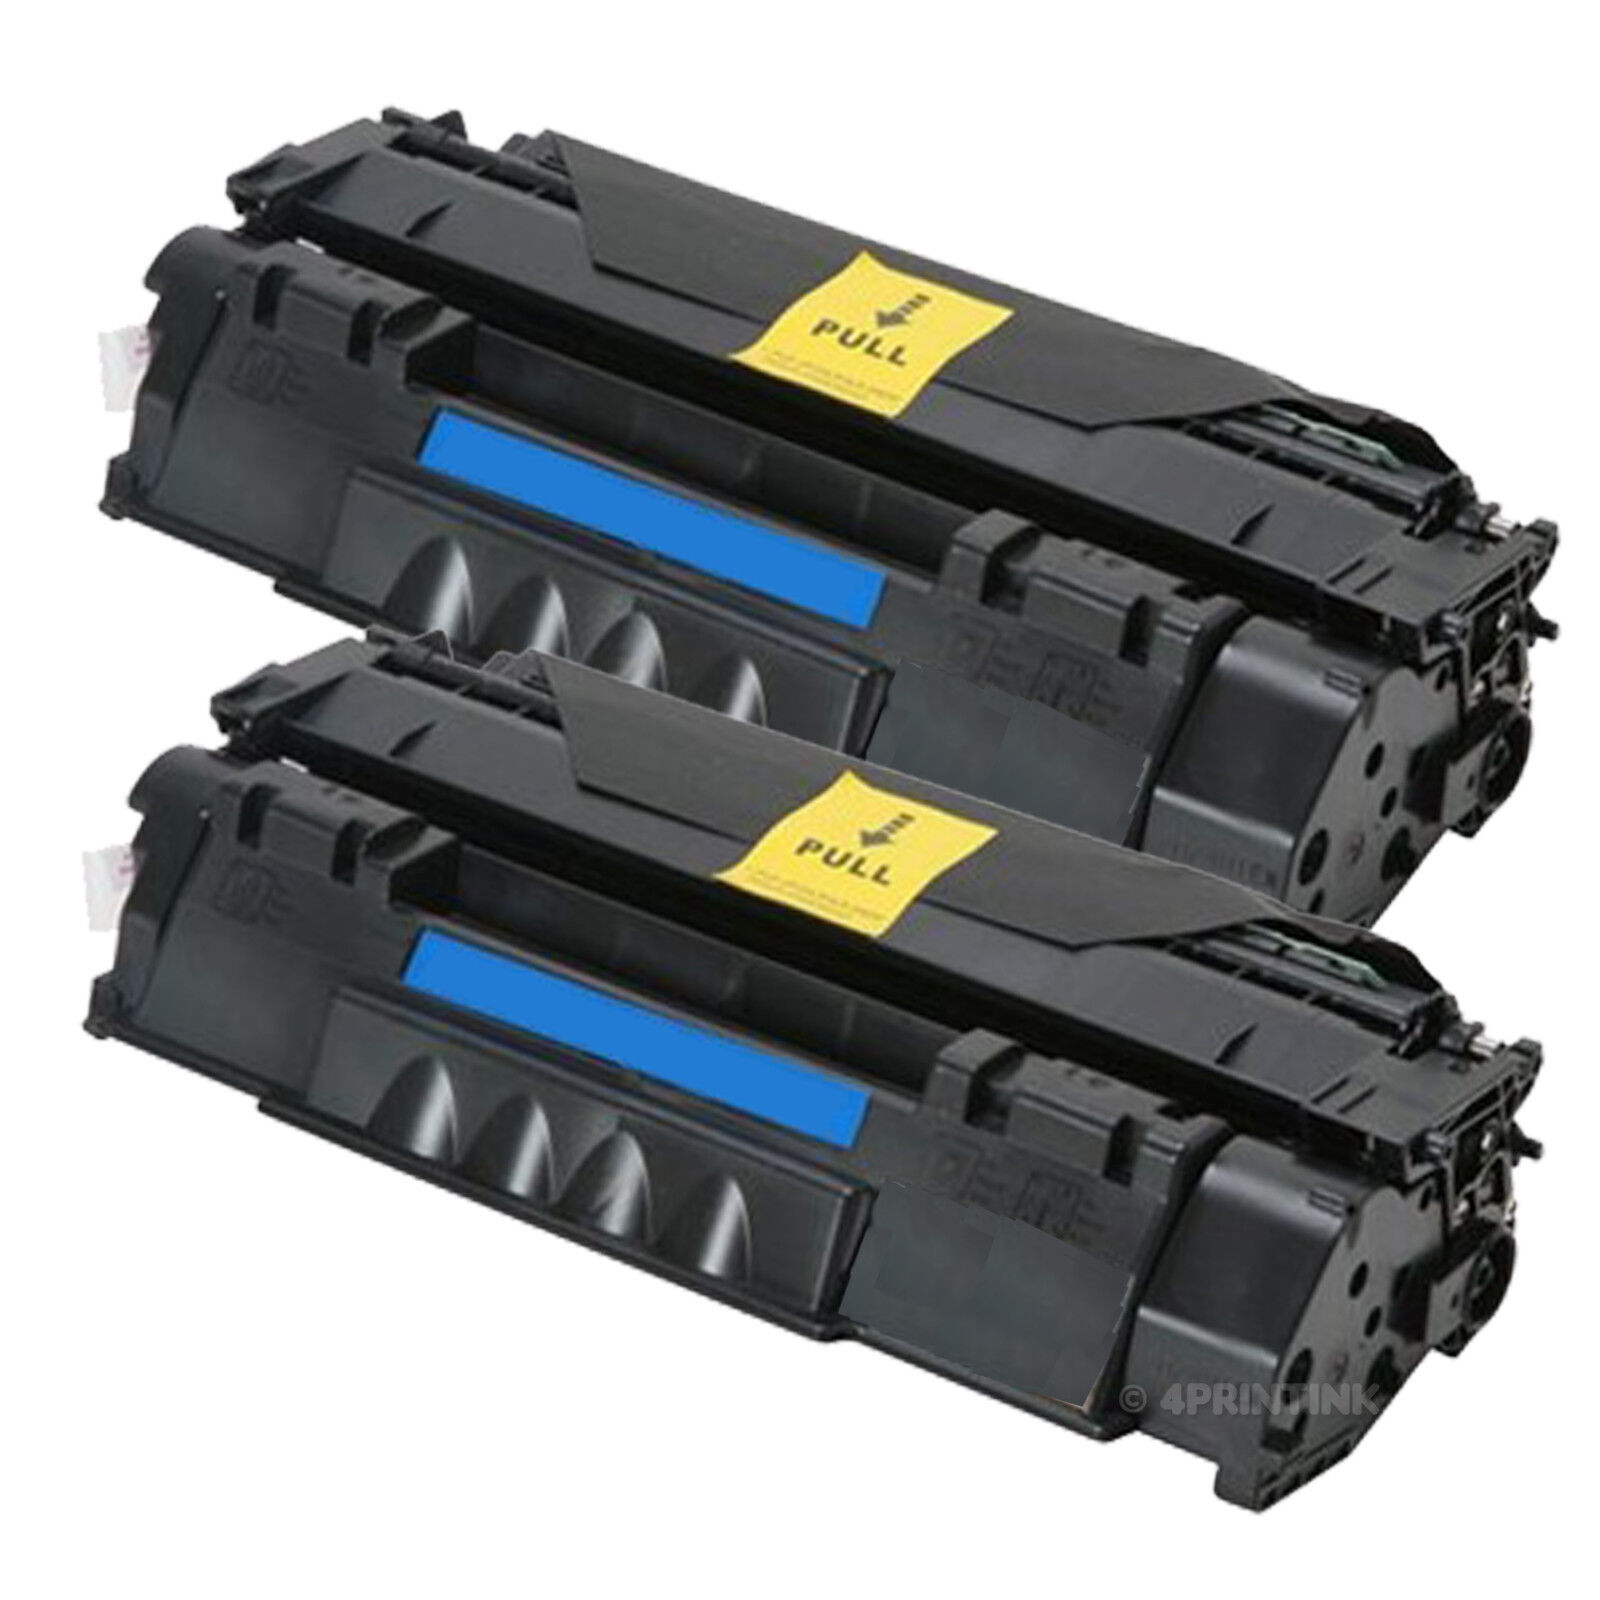 2 Pack Q7553A Laser Toner for HP Laserjet P2015, P2015dn, M2727 Series